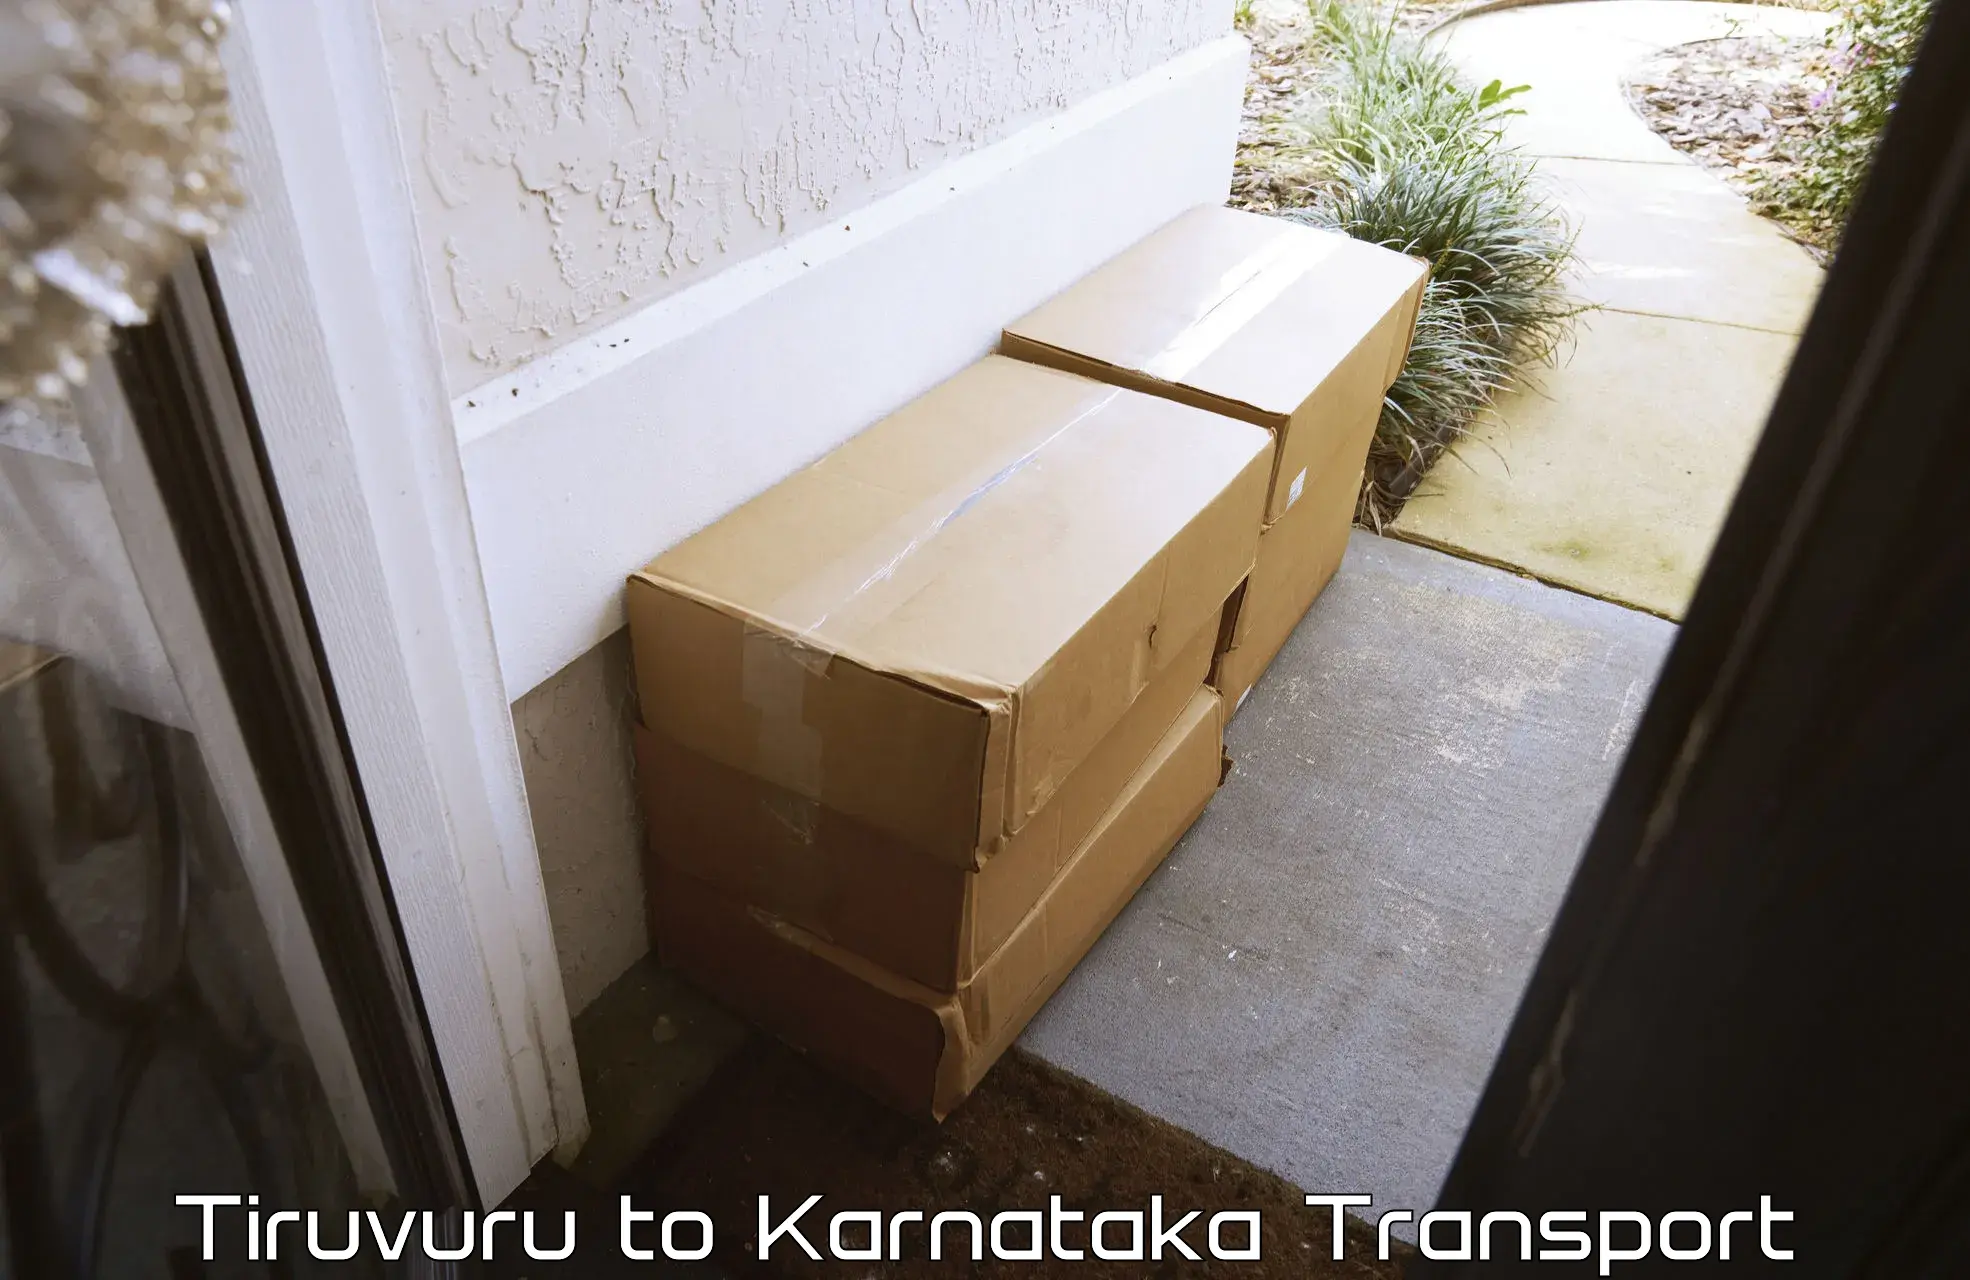 Furniture transport service Tiruvuru to Chikodi